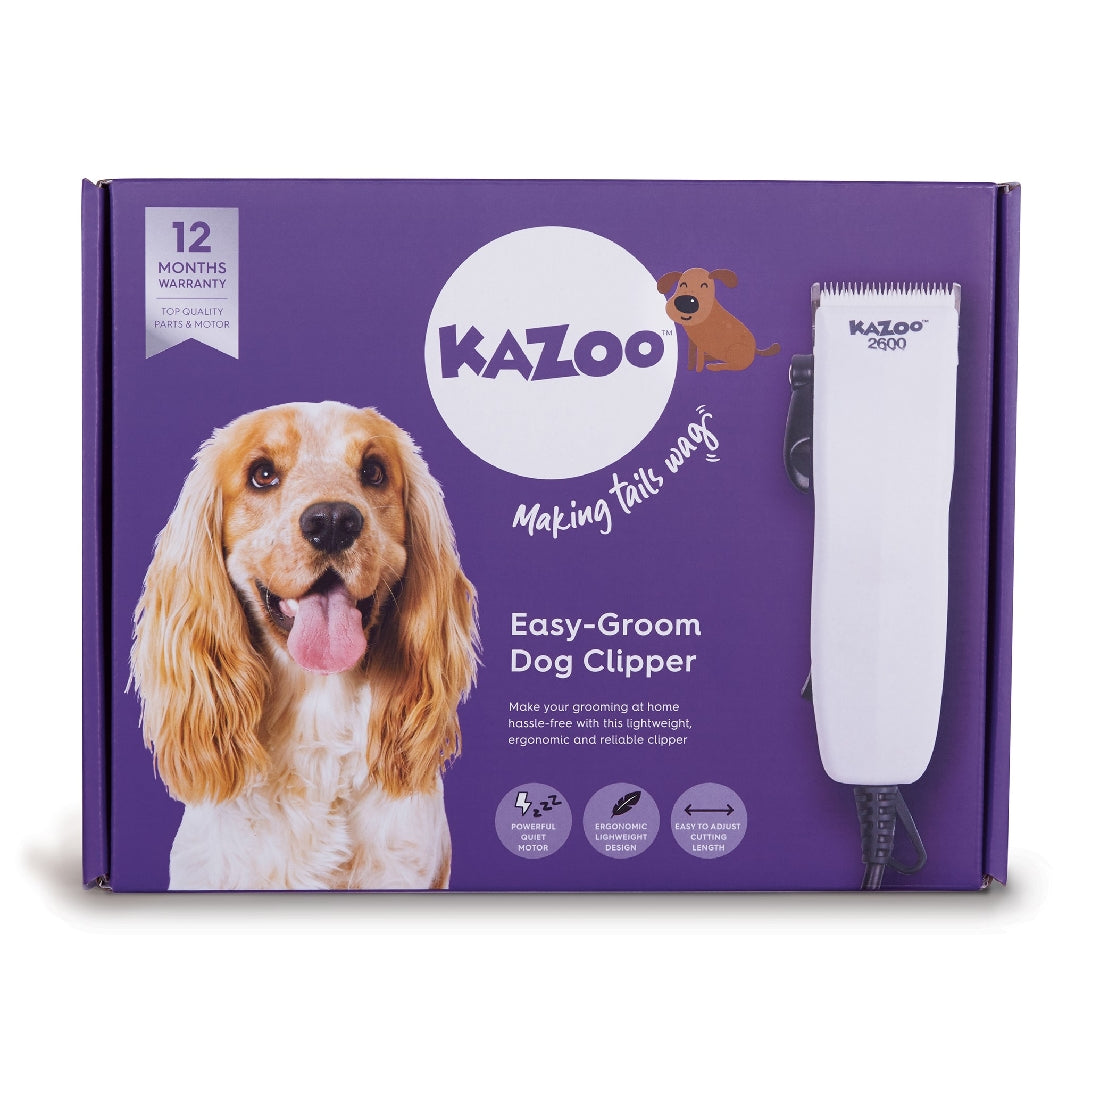 KAZOO EASY-GROOM DOG CLIPPER